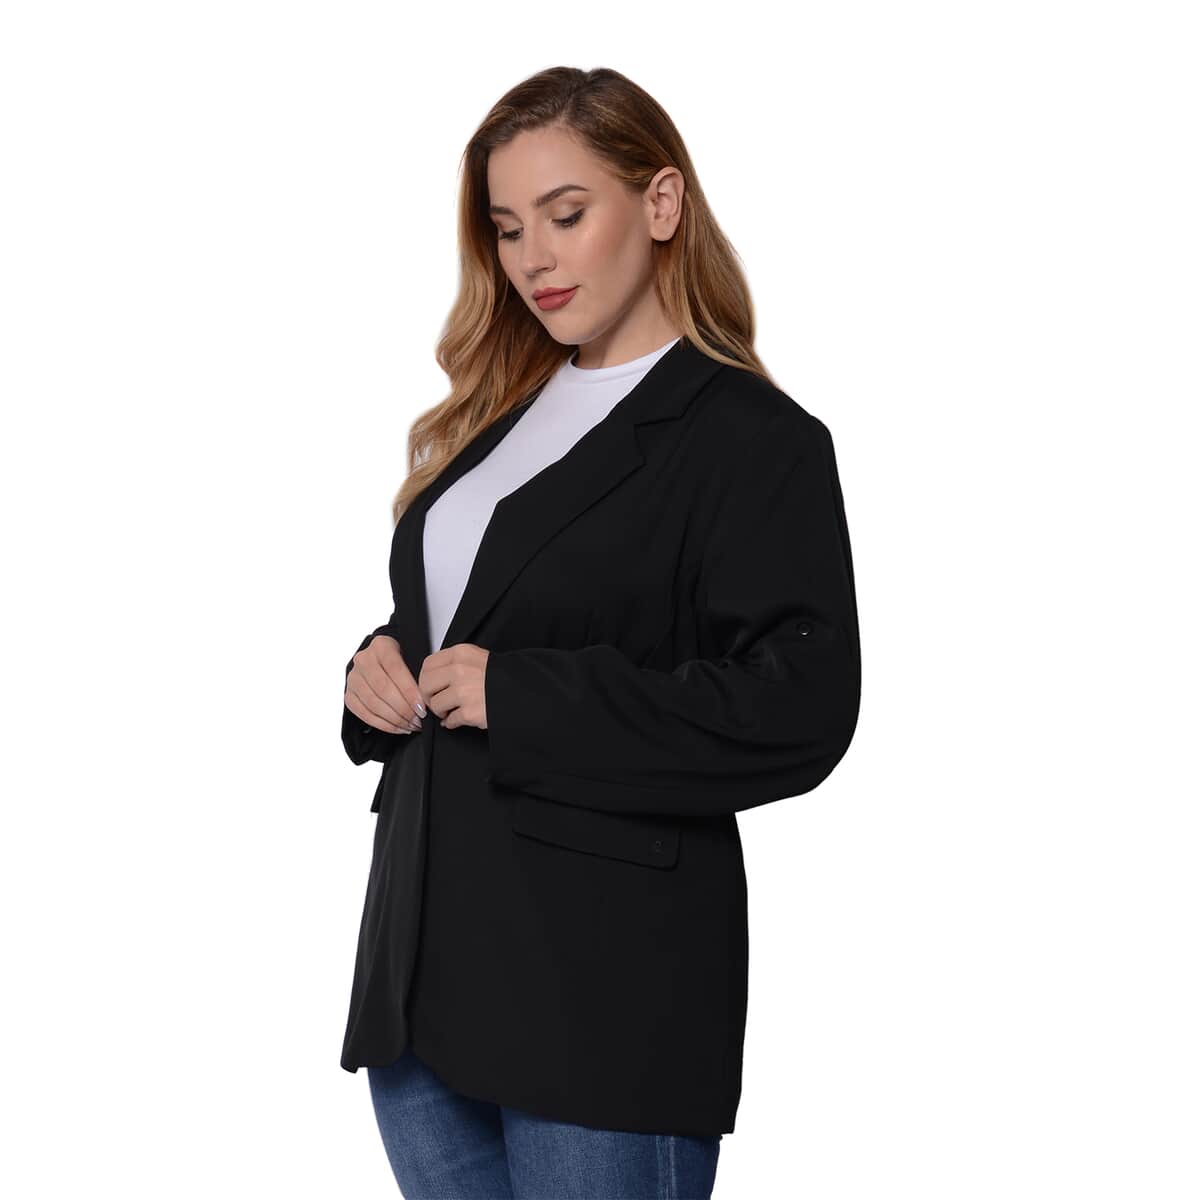 Black Women's Suit Jacket - 5X image number 2